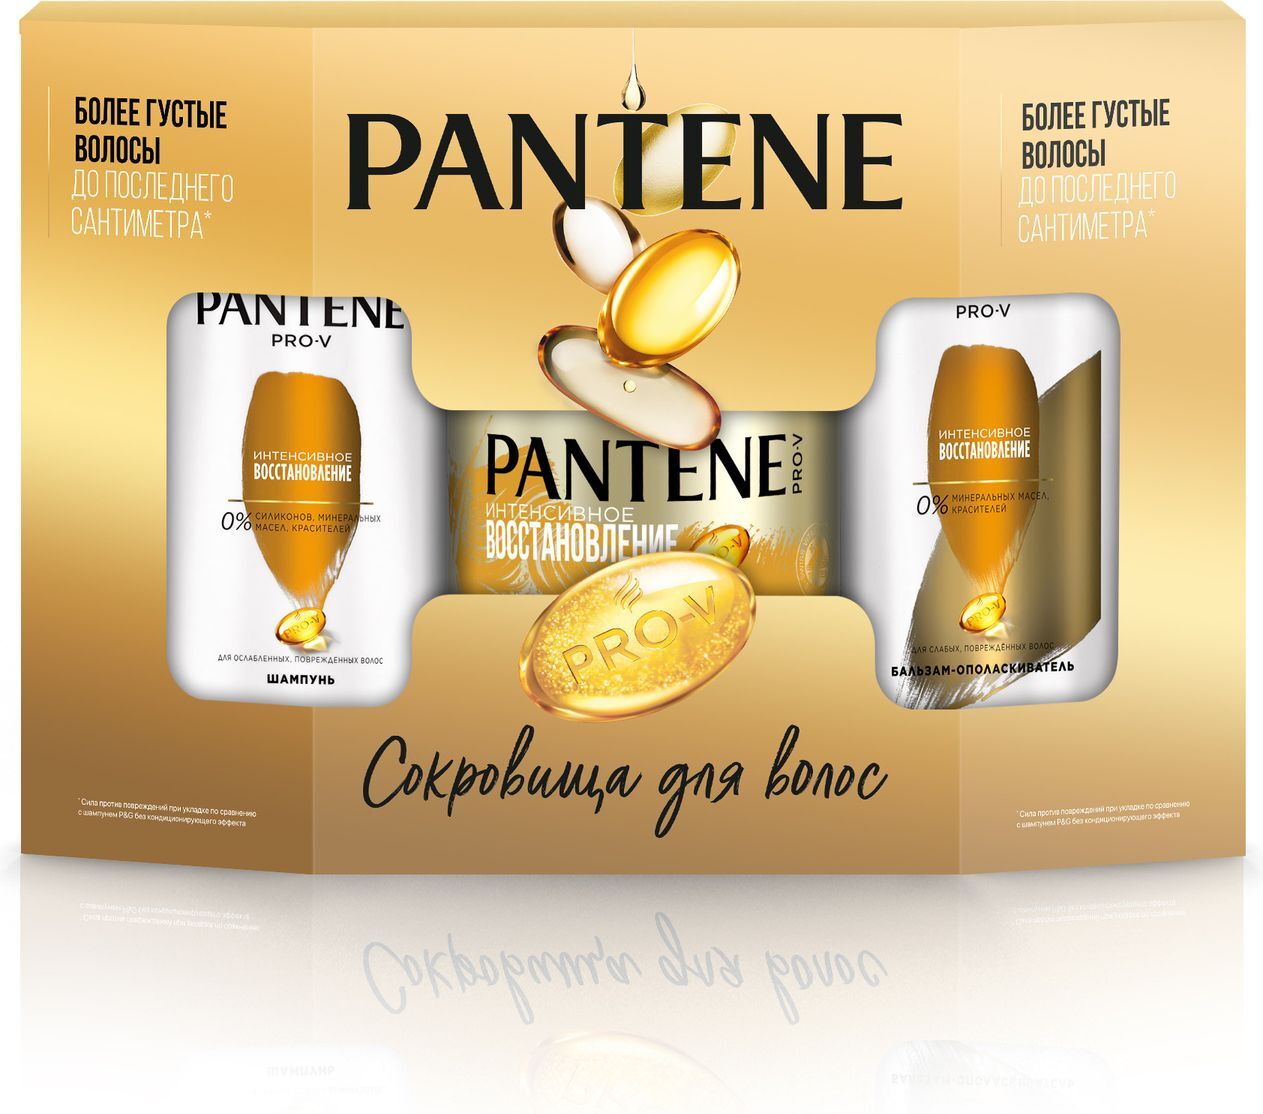 Подарочный набор PANTENE Pro-V Интенсивное восстановление: Шампунь, 250 мл + Маскадля волос, 300 мл + Бальзам-ополаскиватель, 200 мл